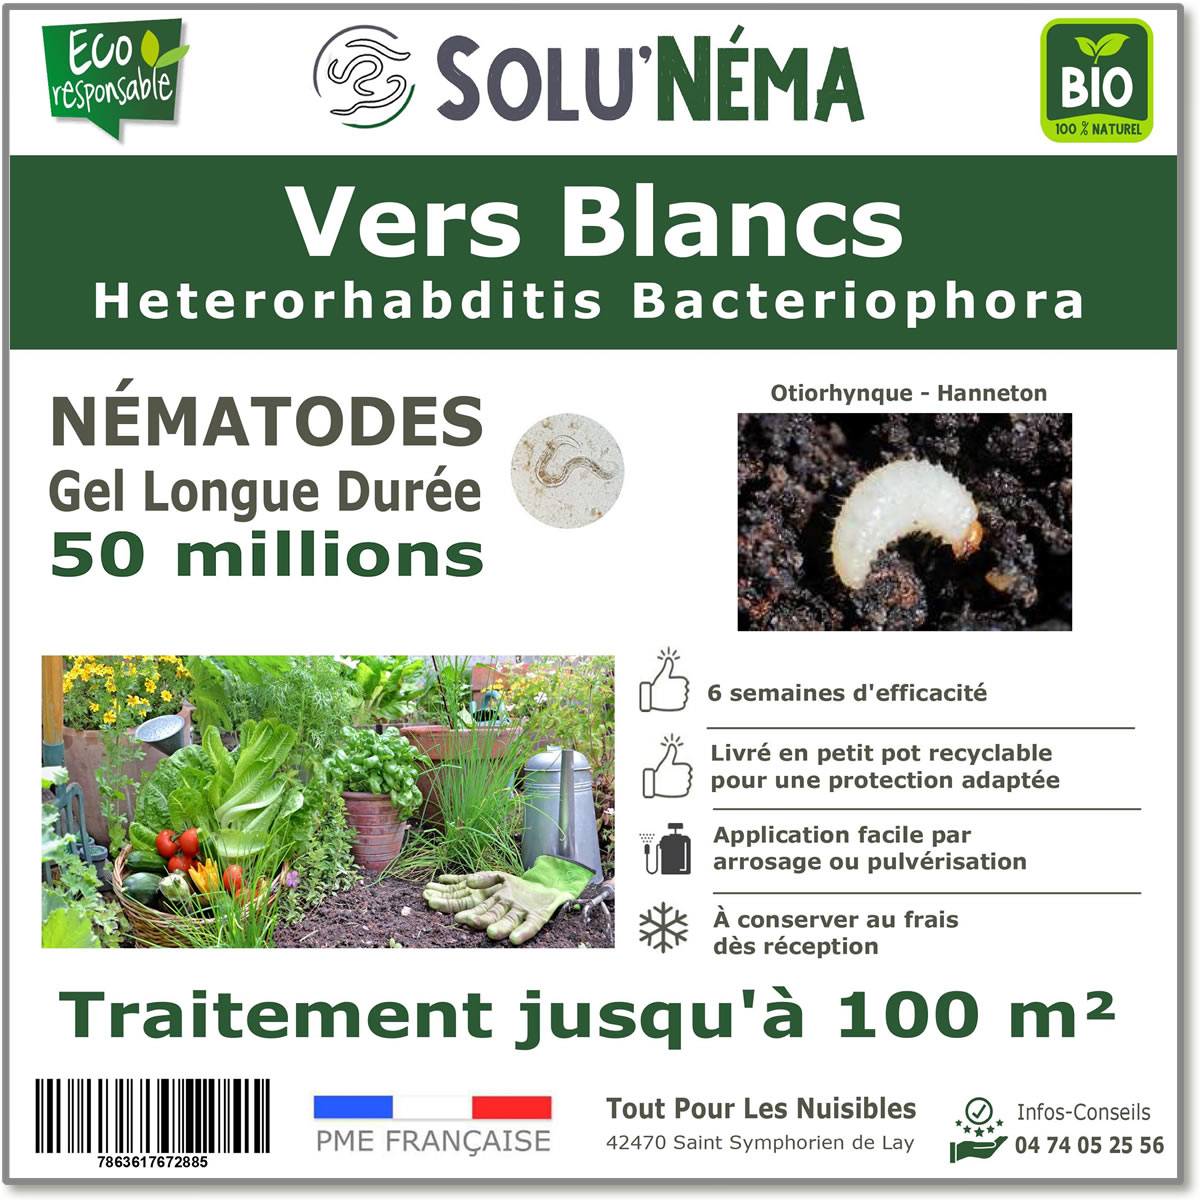 Nématodes (HB) Solunema pour Les vers blancx - otiorhinque - hanneton 50 millions SF